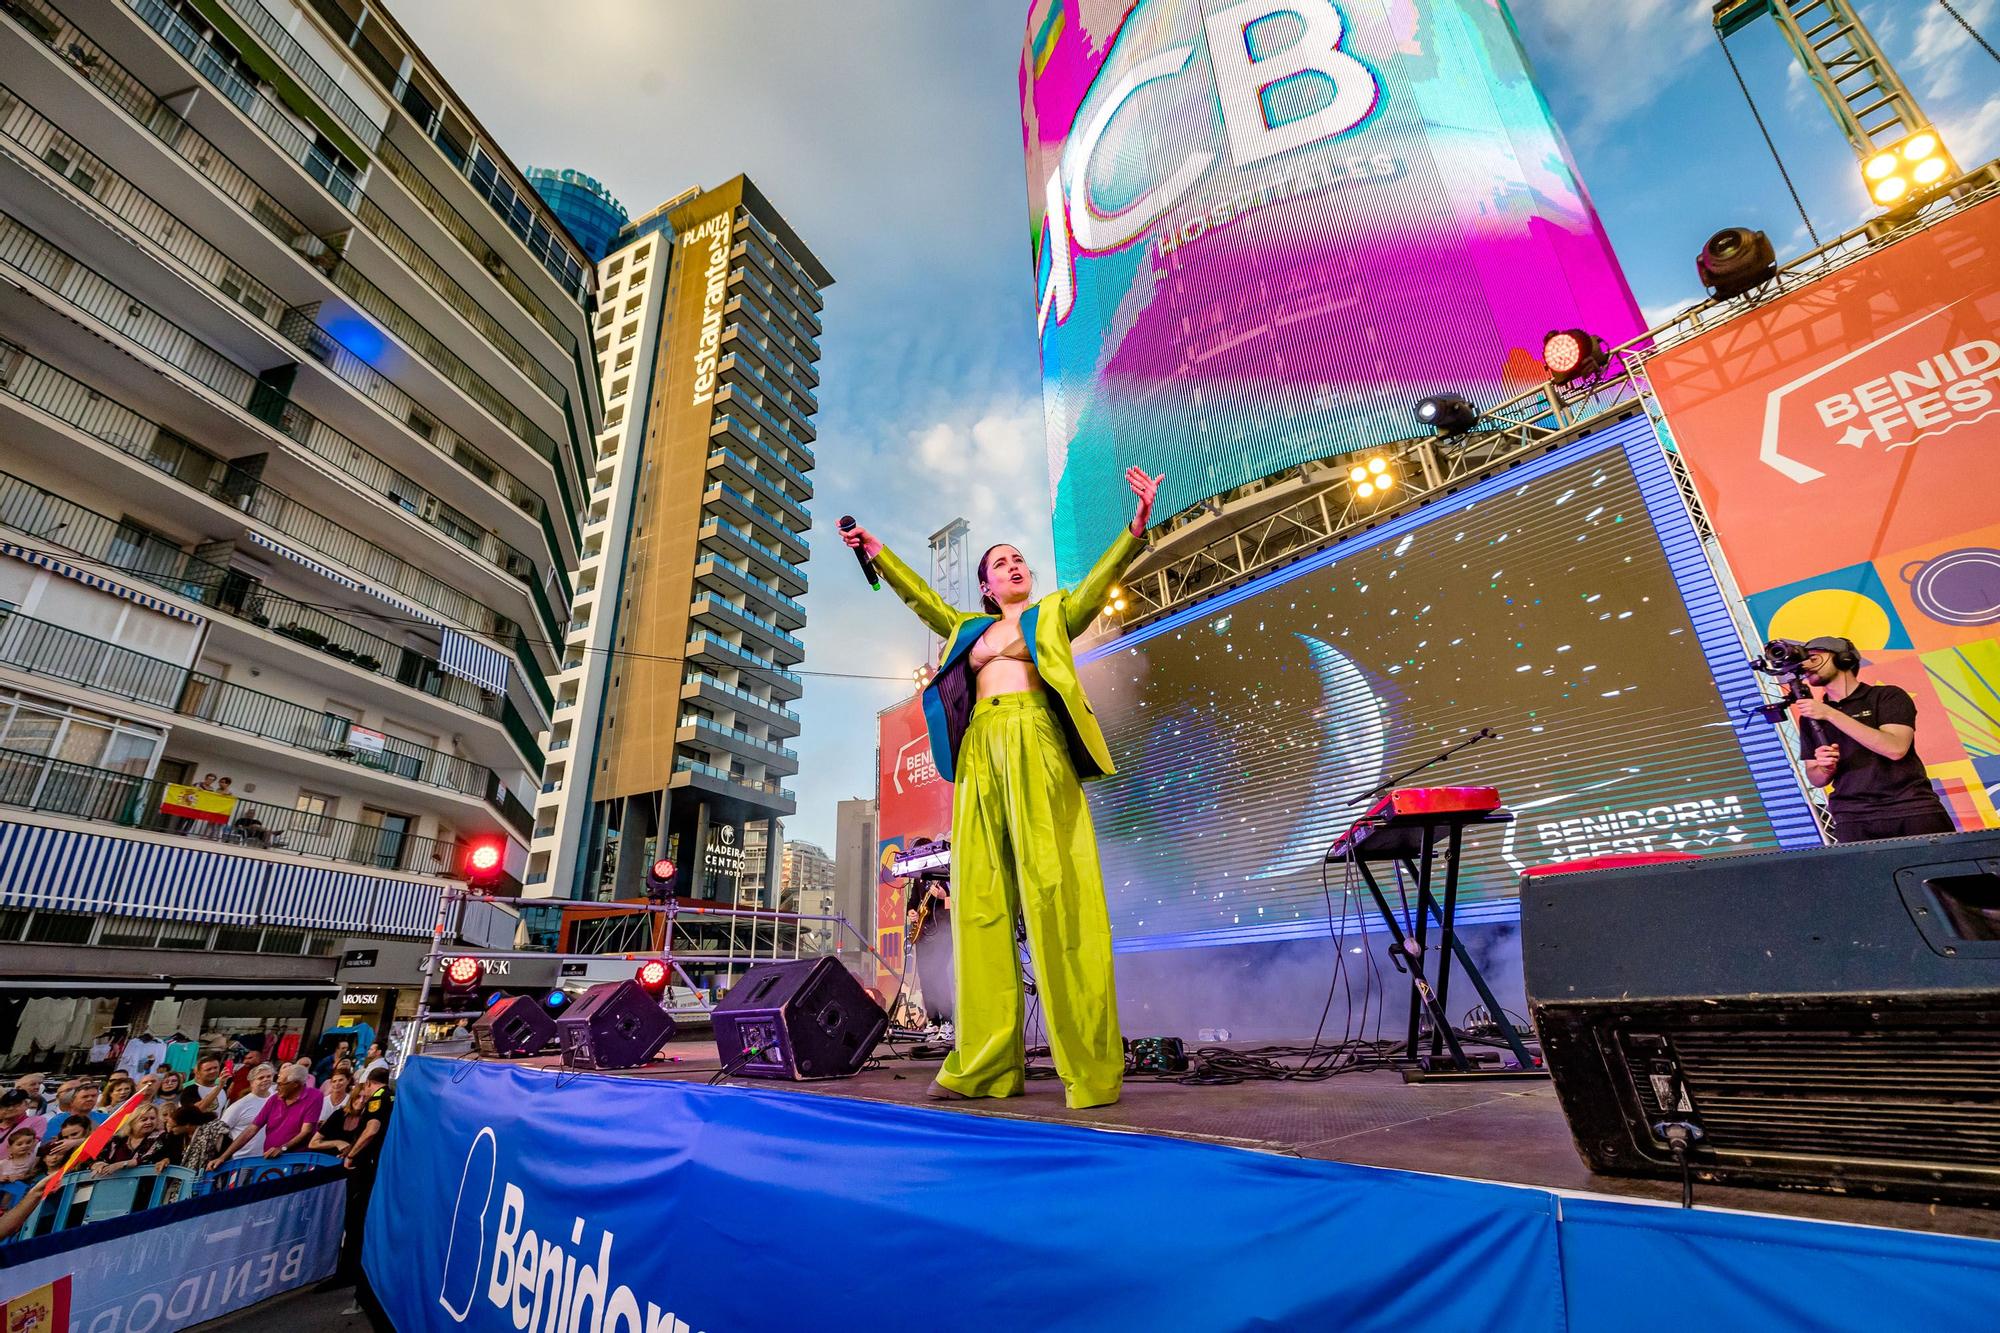 El "tecnohito" de Benidorm, icono de promoción turística La torre de 18 metros de altura se convierte en uno de los protagonistas de la celebración de Eurovisión y en uno de los enclaves turísticos